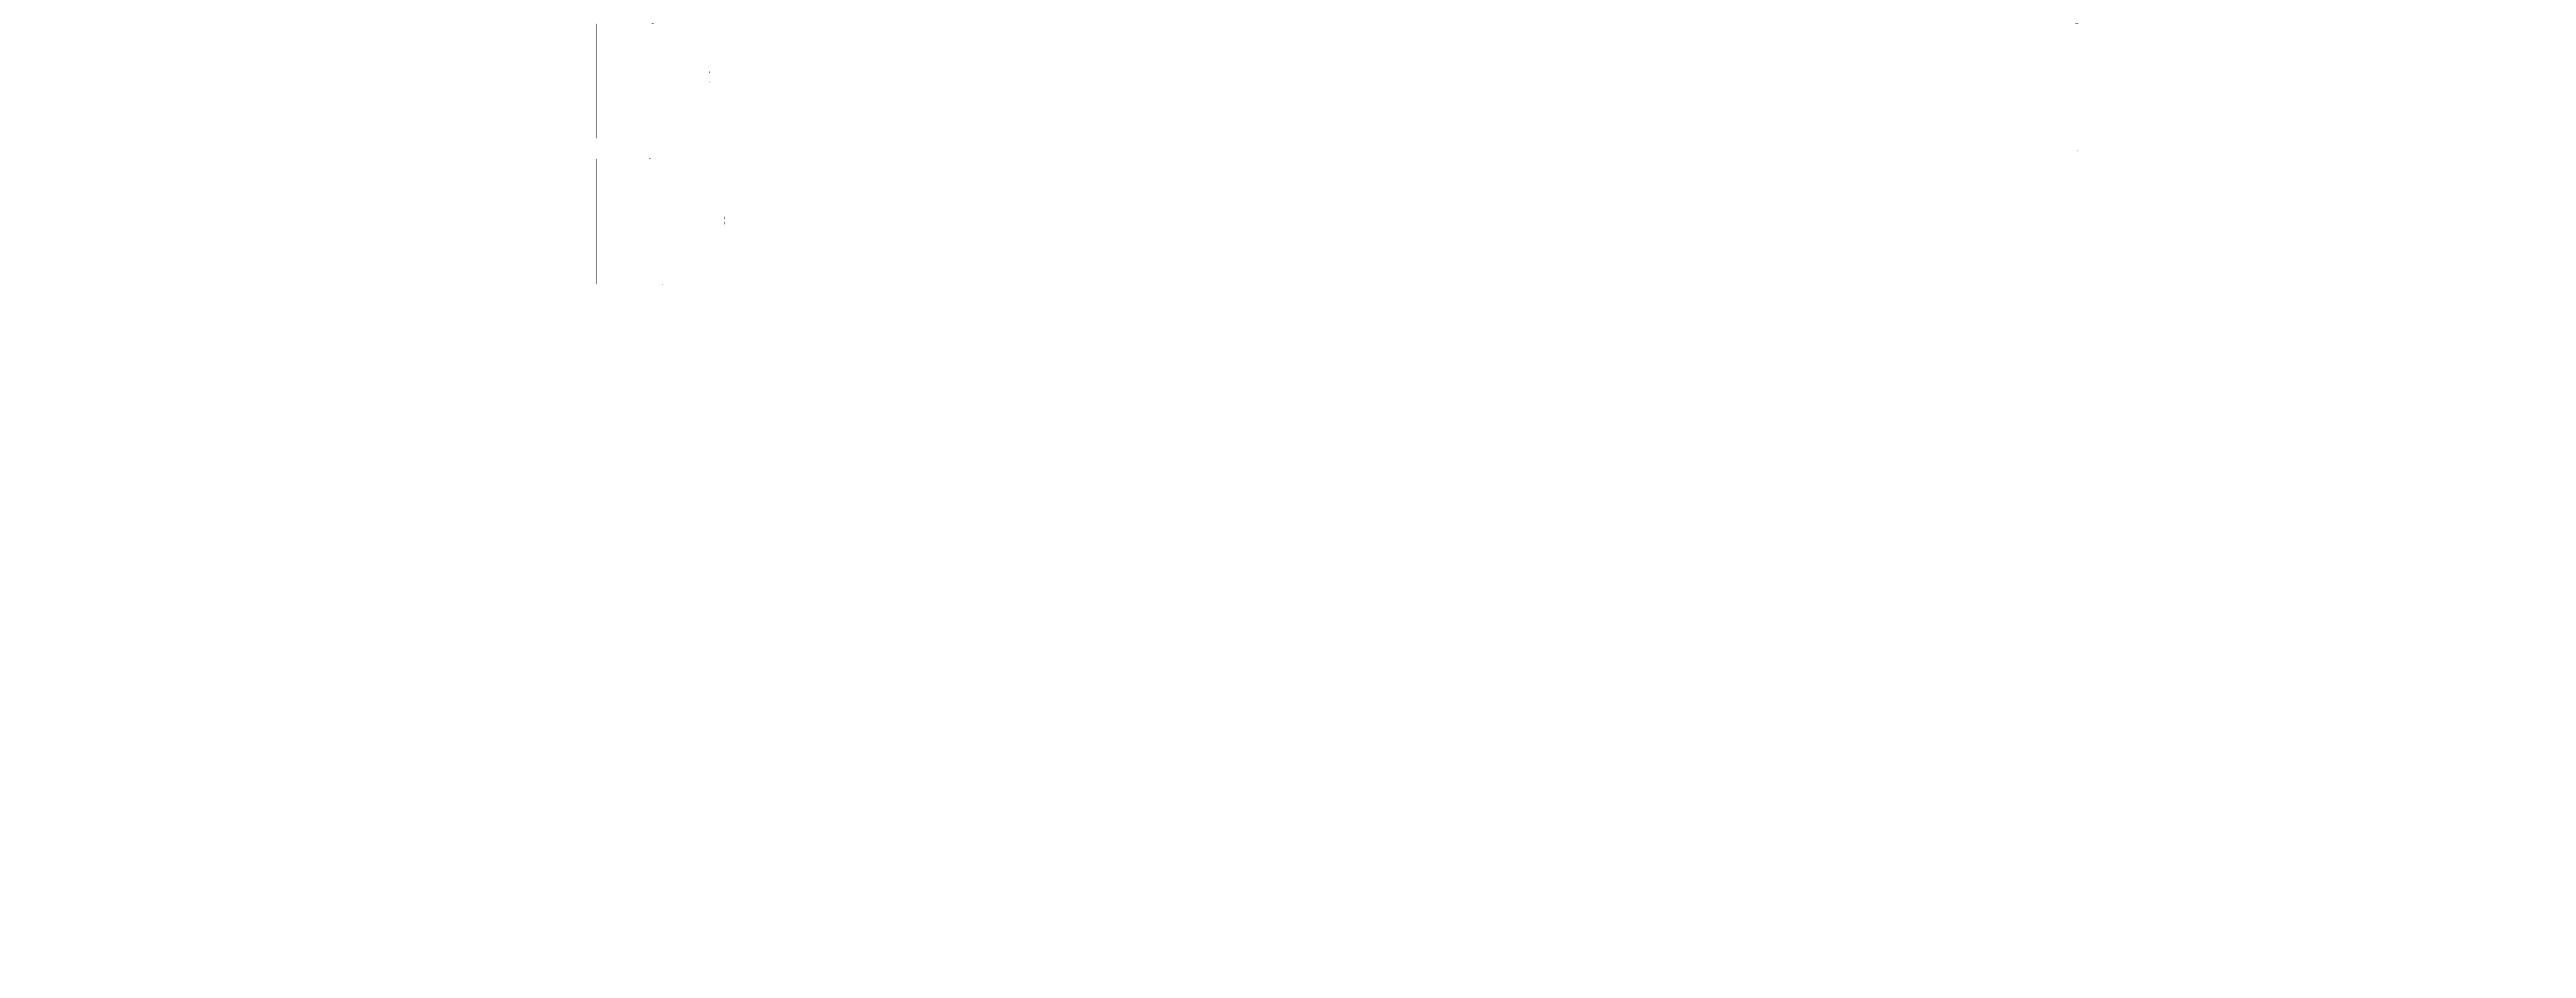 BayernMUN